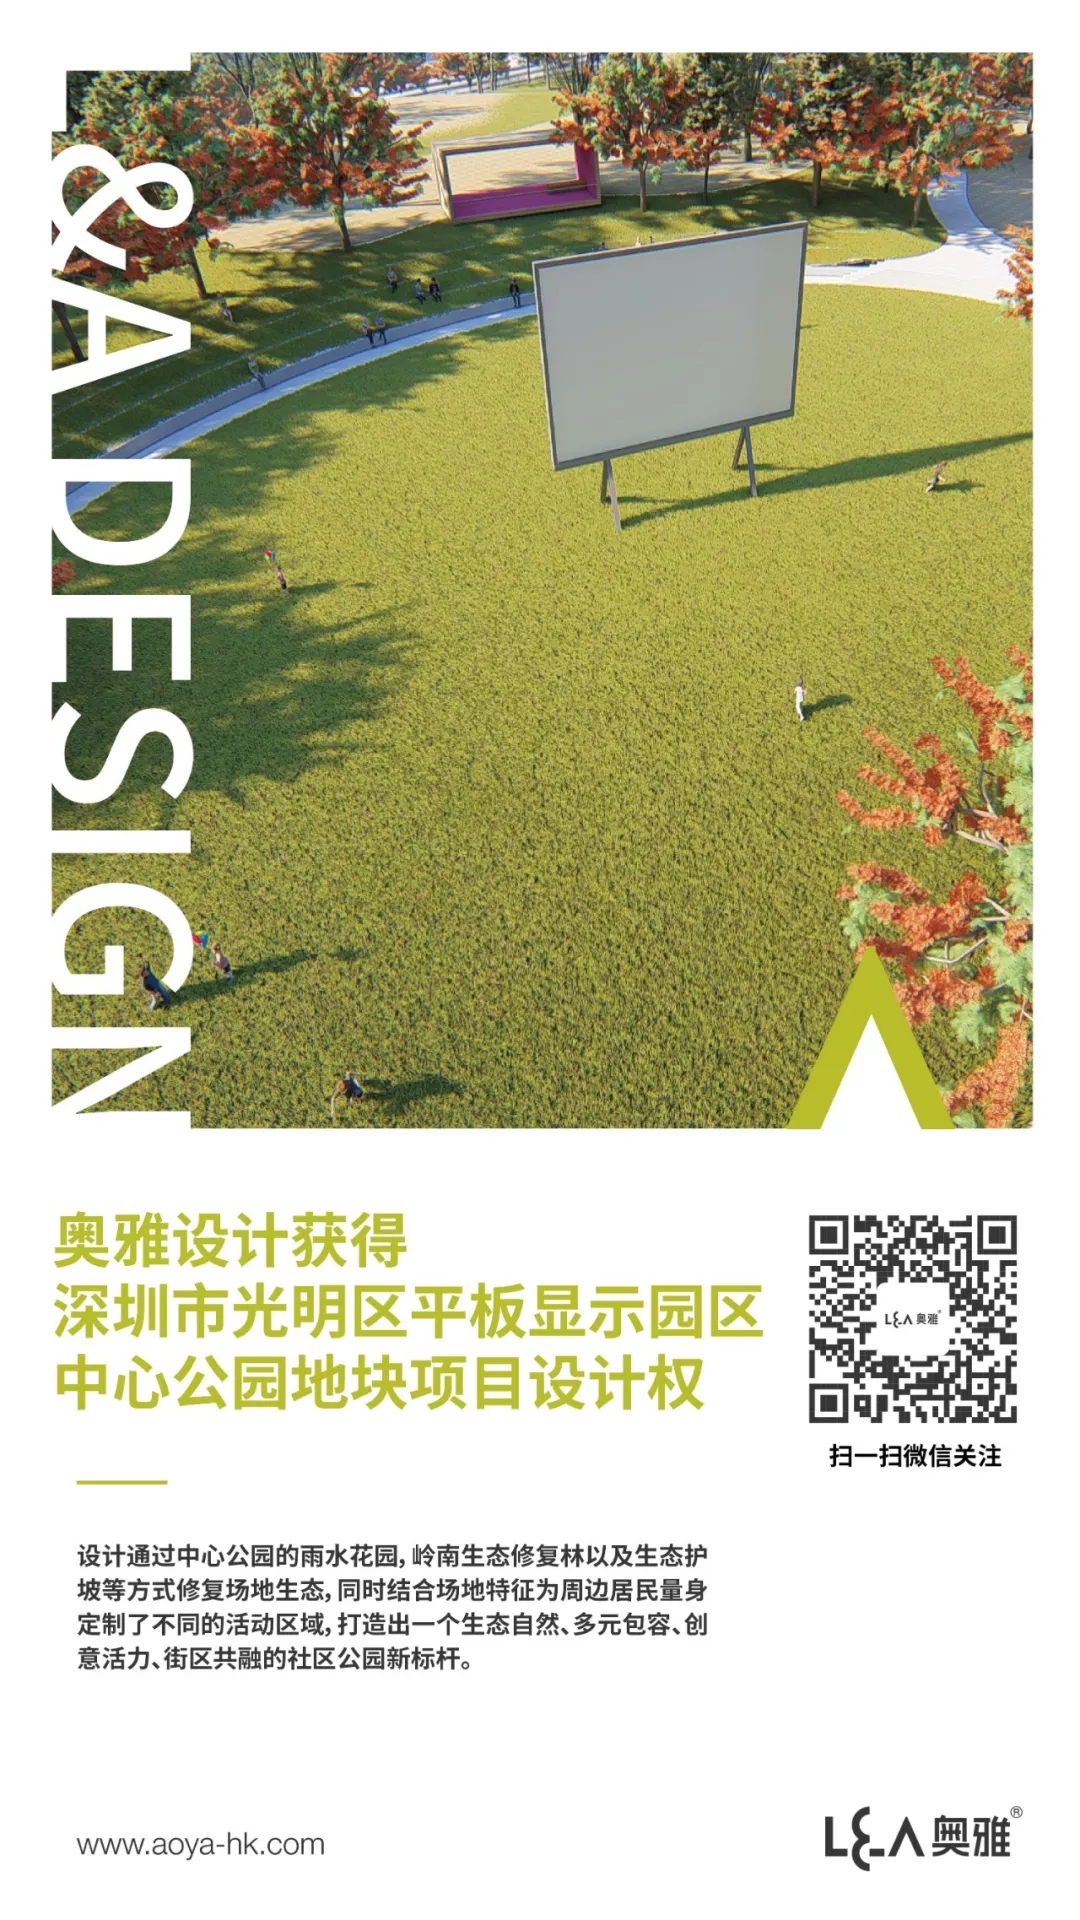 奥雅设计获得深圳光明区平板显示园区中心公园地块项目设计权